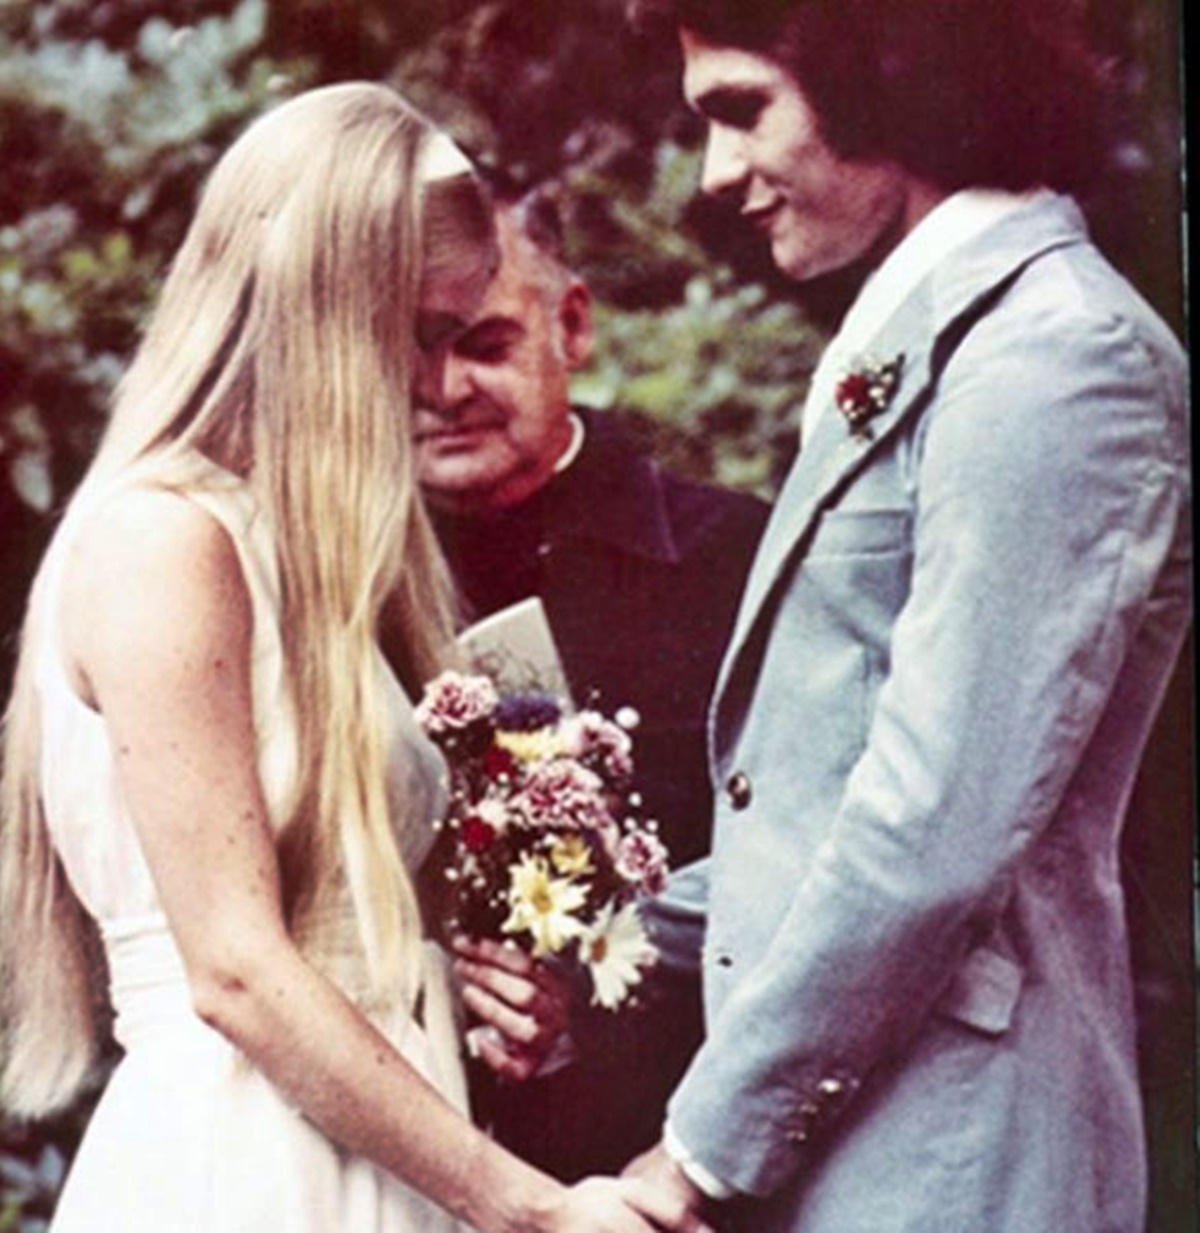 Patrick Swayze és élete szerelme esküvői képe 48 évvel ezelőttről – Lisával 34 évig voltak házasok